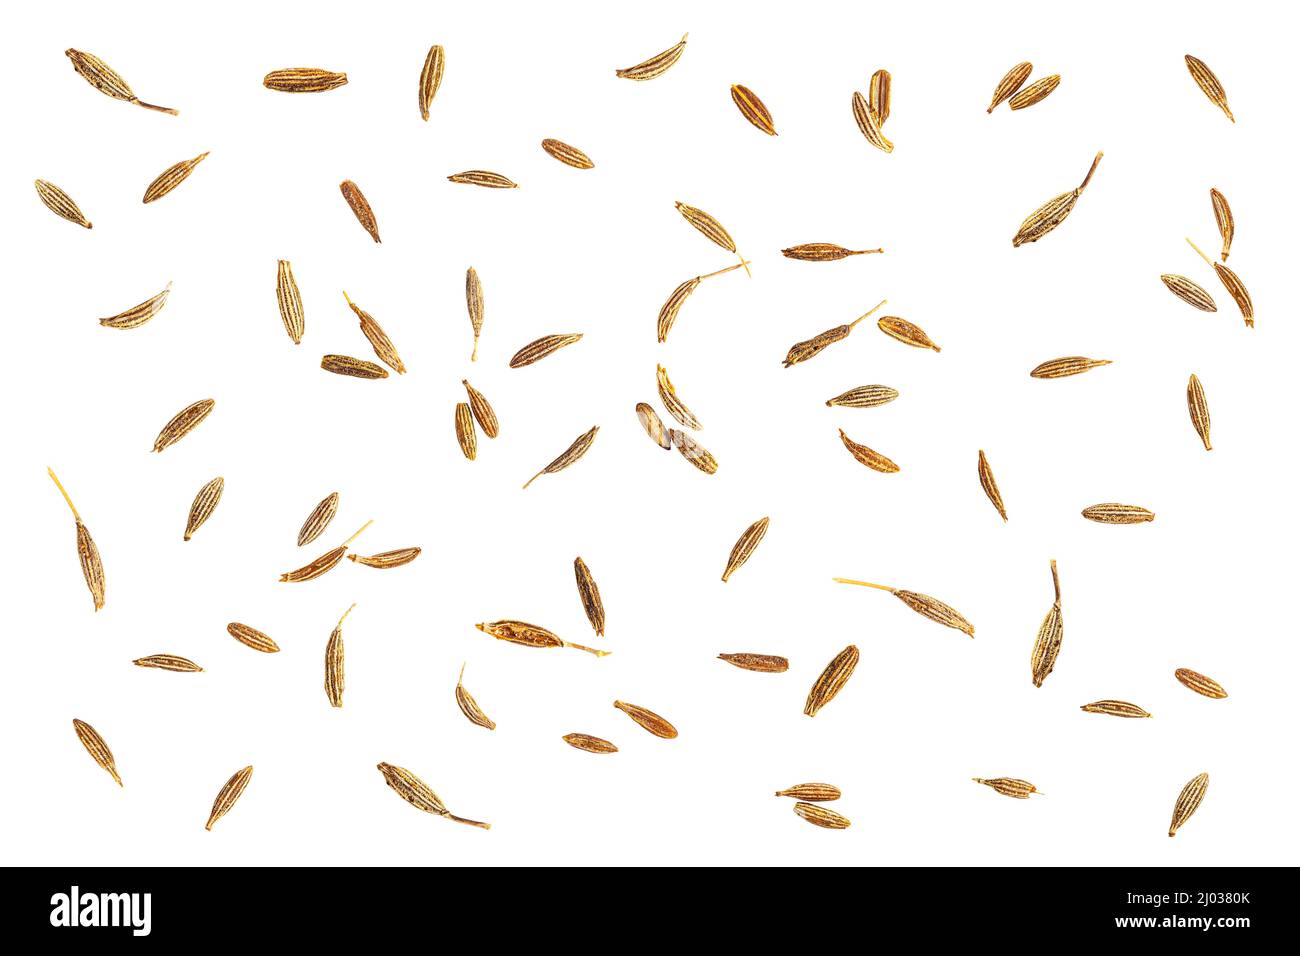 Semi di cumino secchi da basilico albero aroma indiano cibo isolato su sfondo bianco Foto Stock